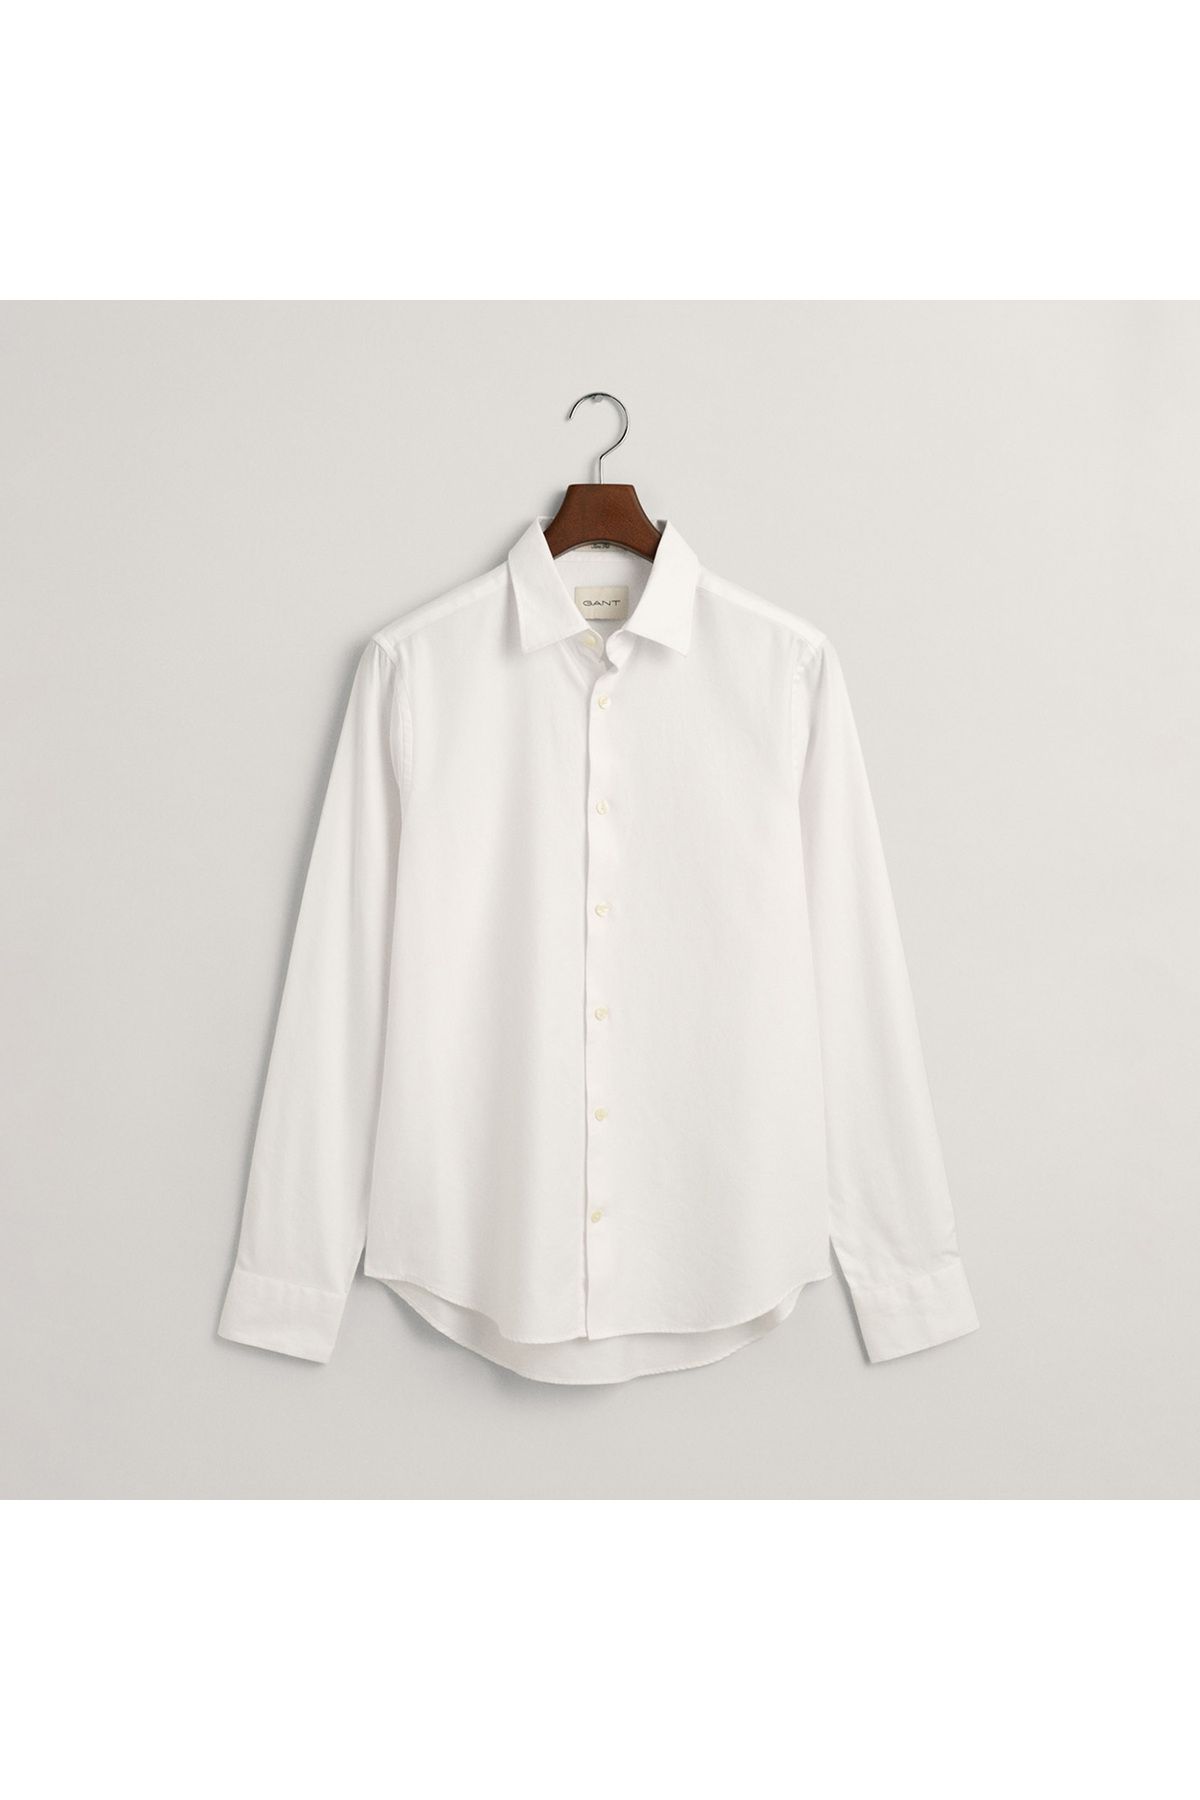 Gant Erkek Beyaz Slim Fit Klasik Yaka Gömlek